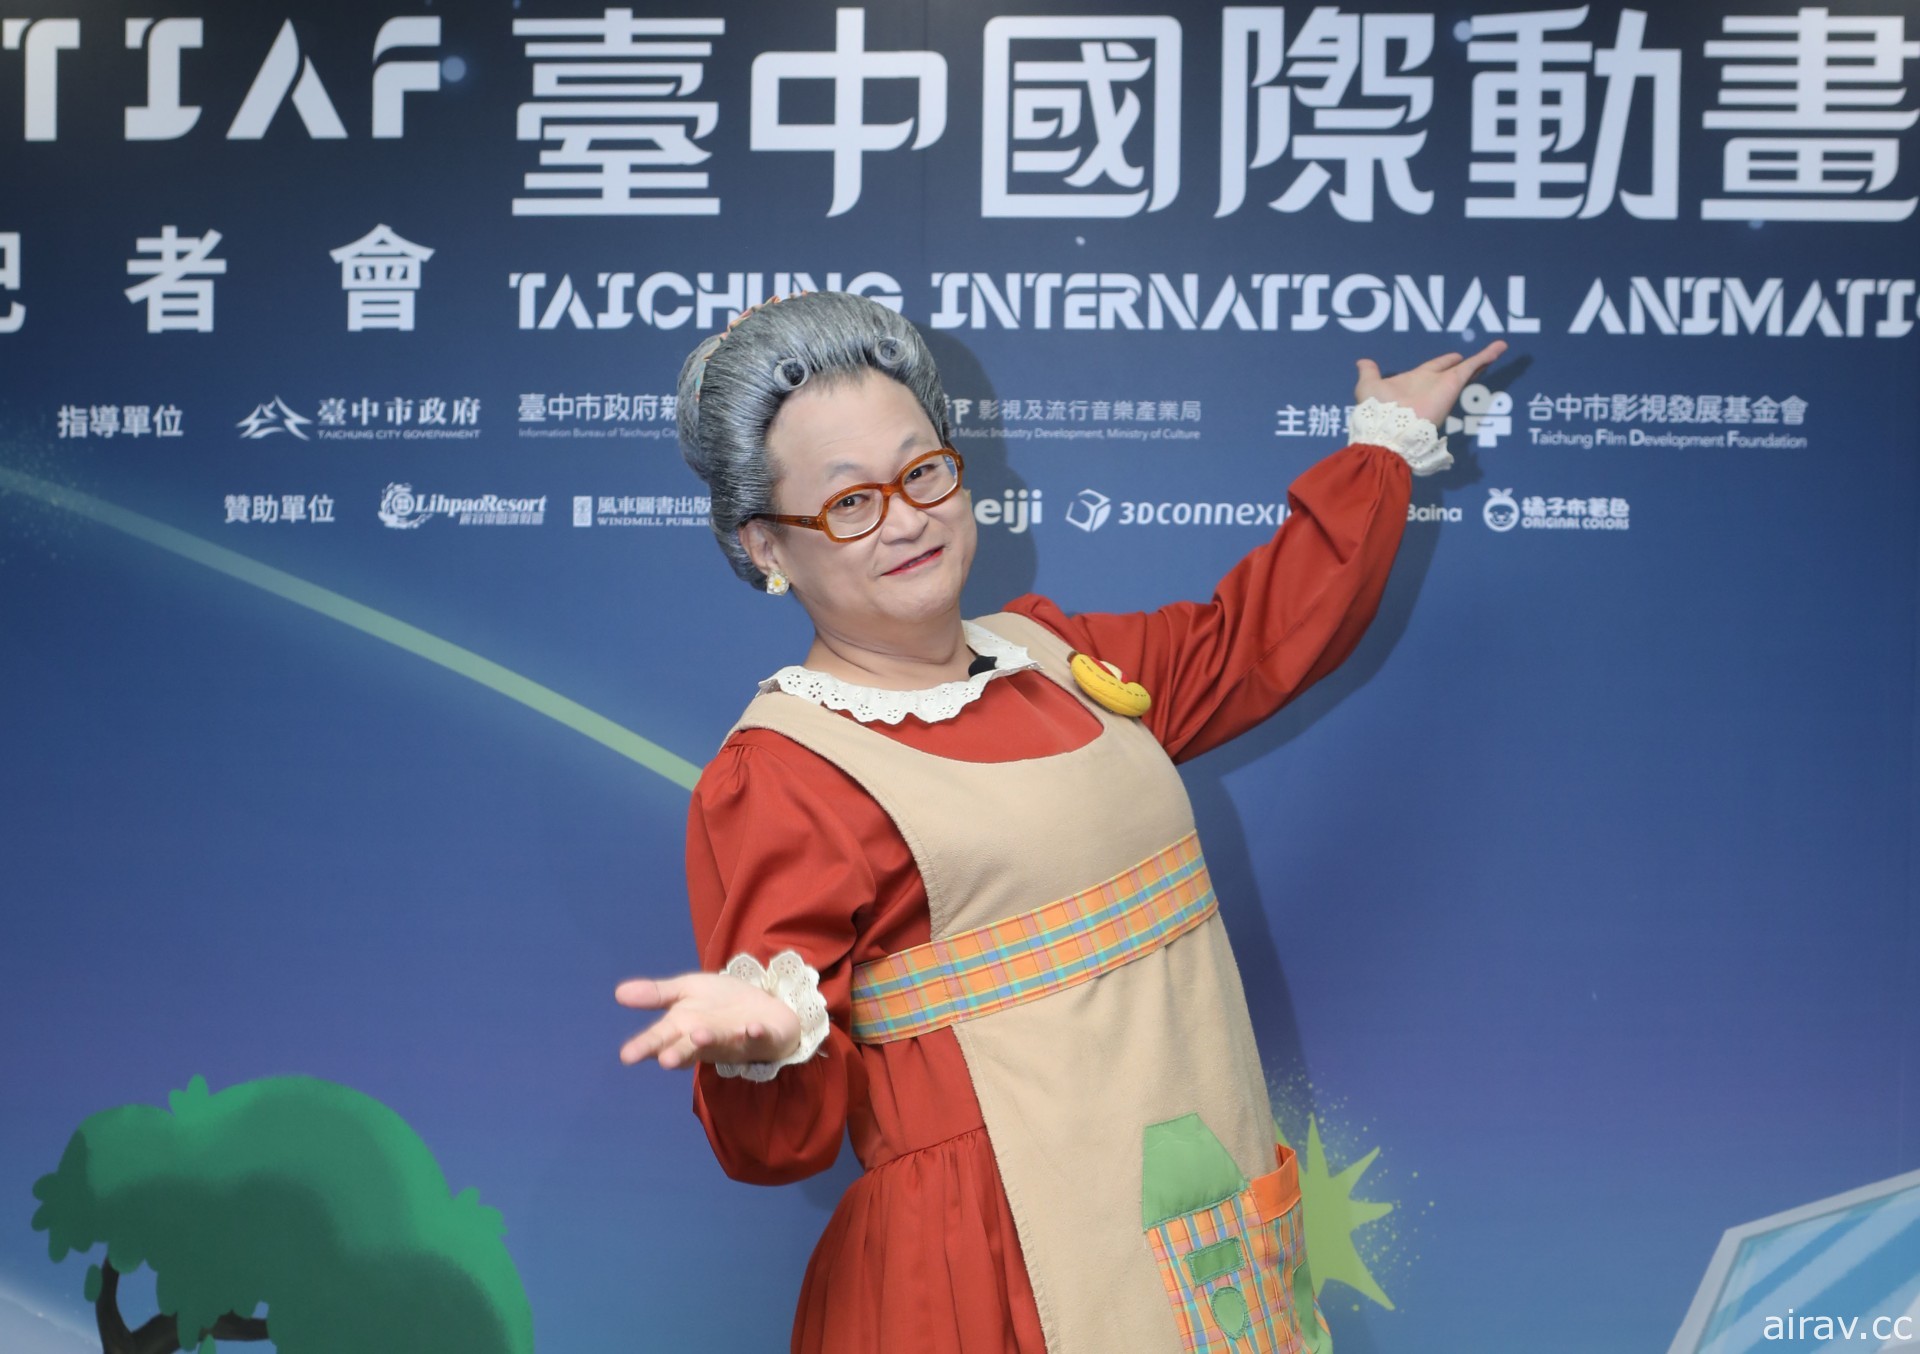 水果奶奶化身动画角色《妖果小学 水果奶奶的大秘密》将于台中国际动画影展首映